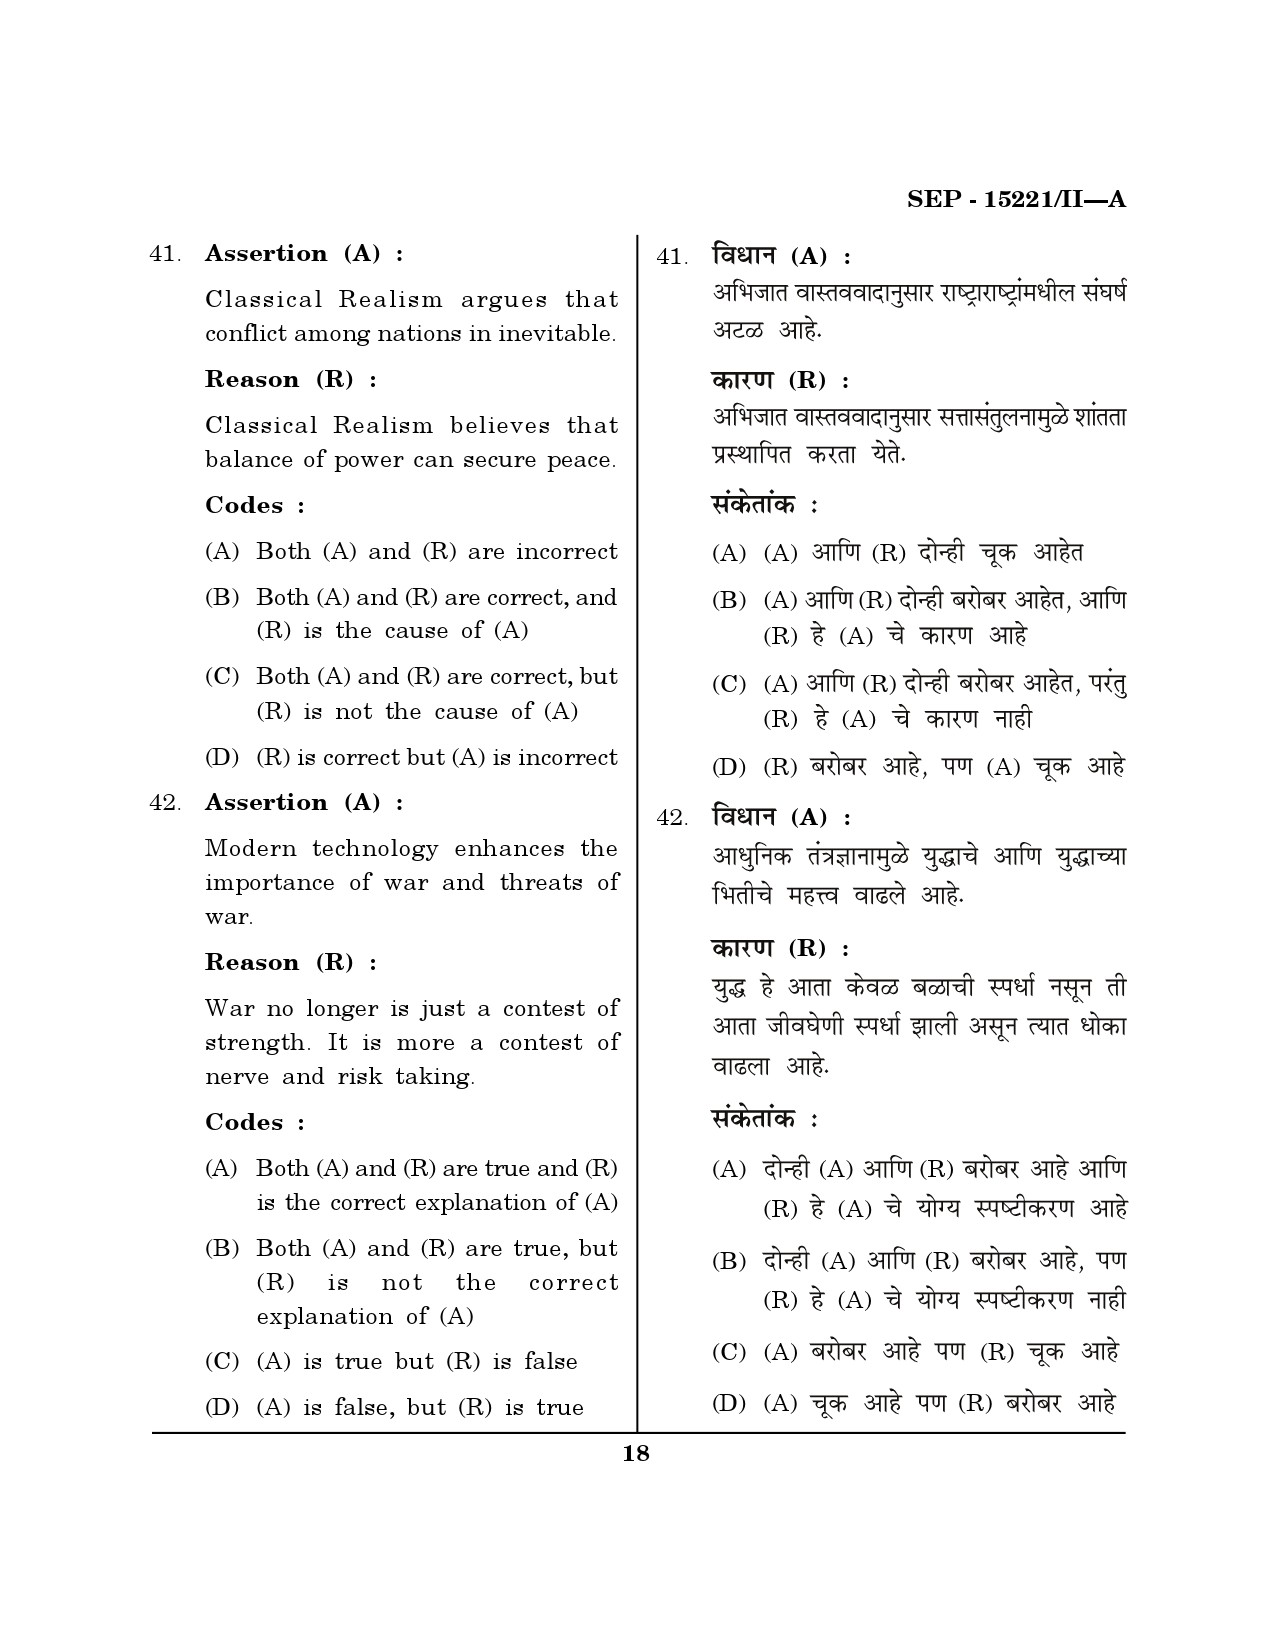 Maharashtra SET Political Science Exam Question Paper September 2021 17